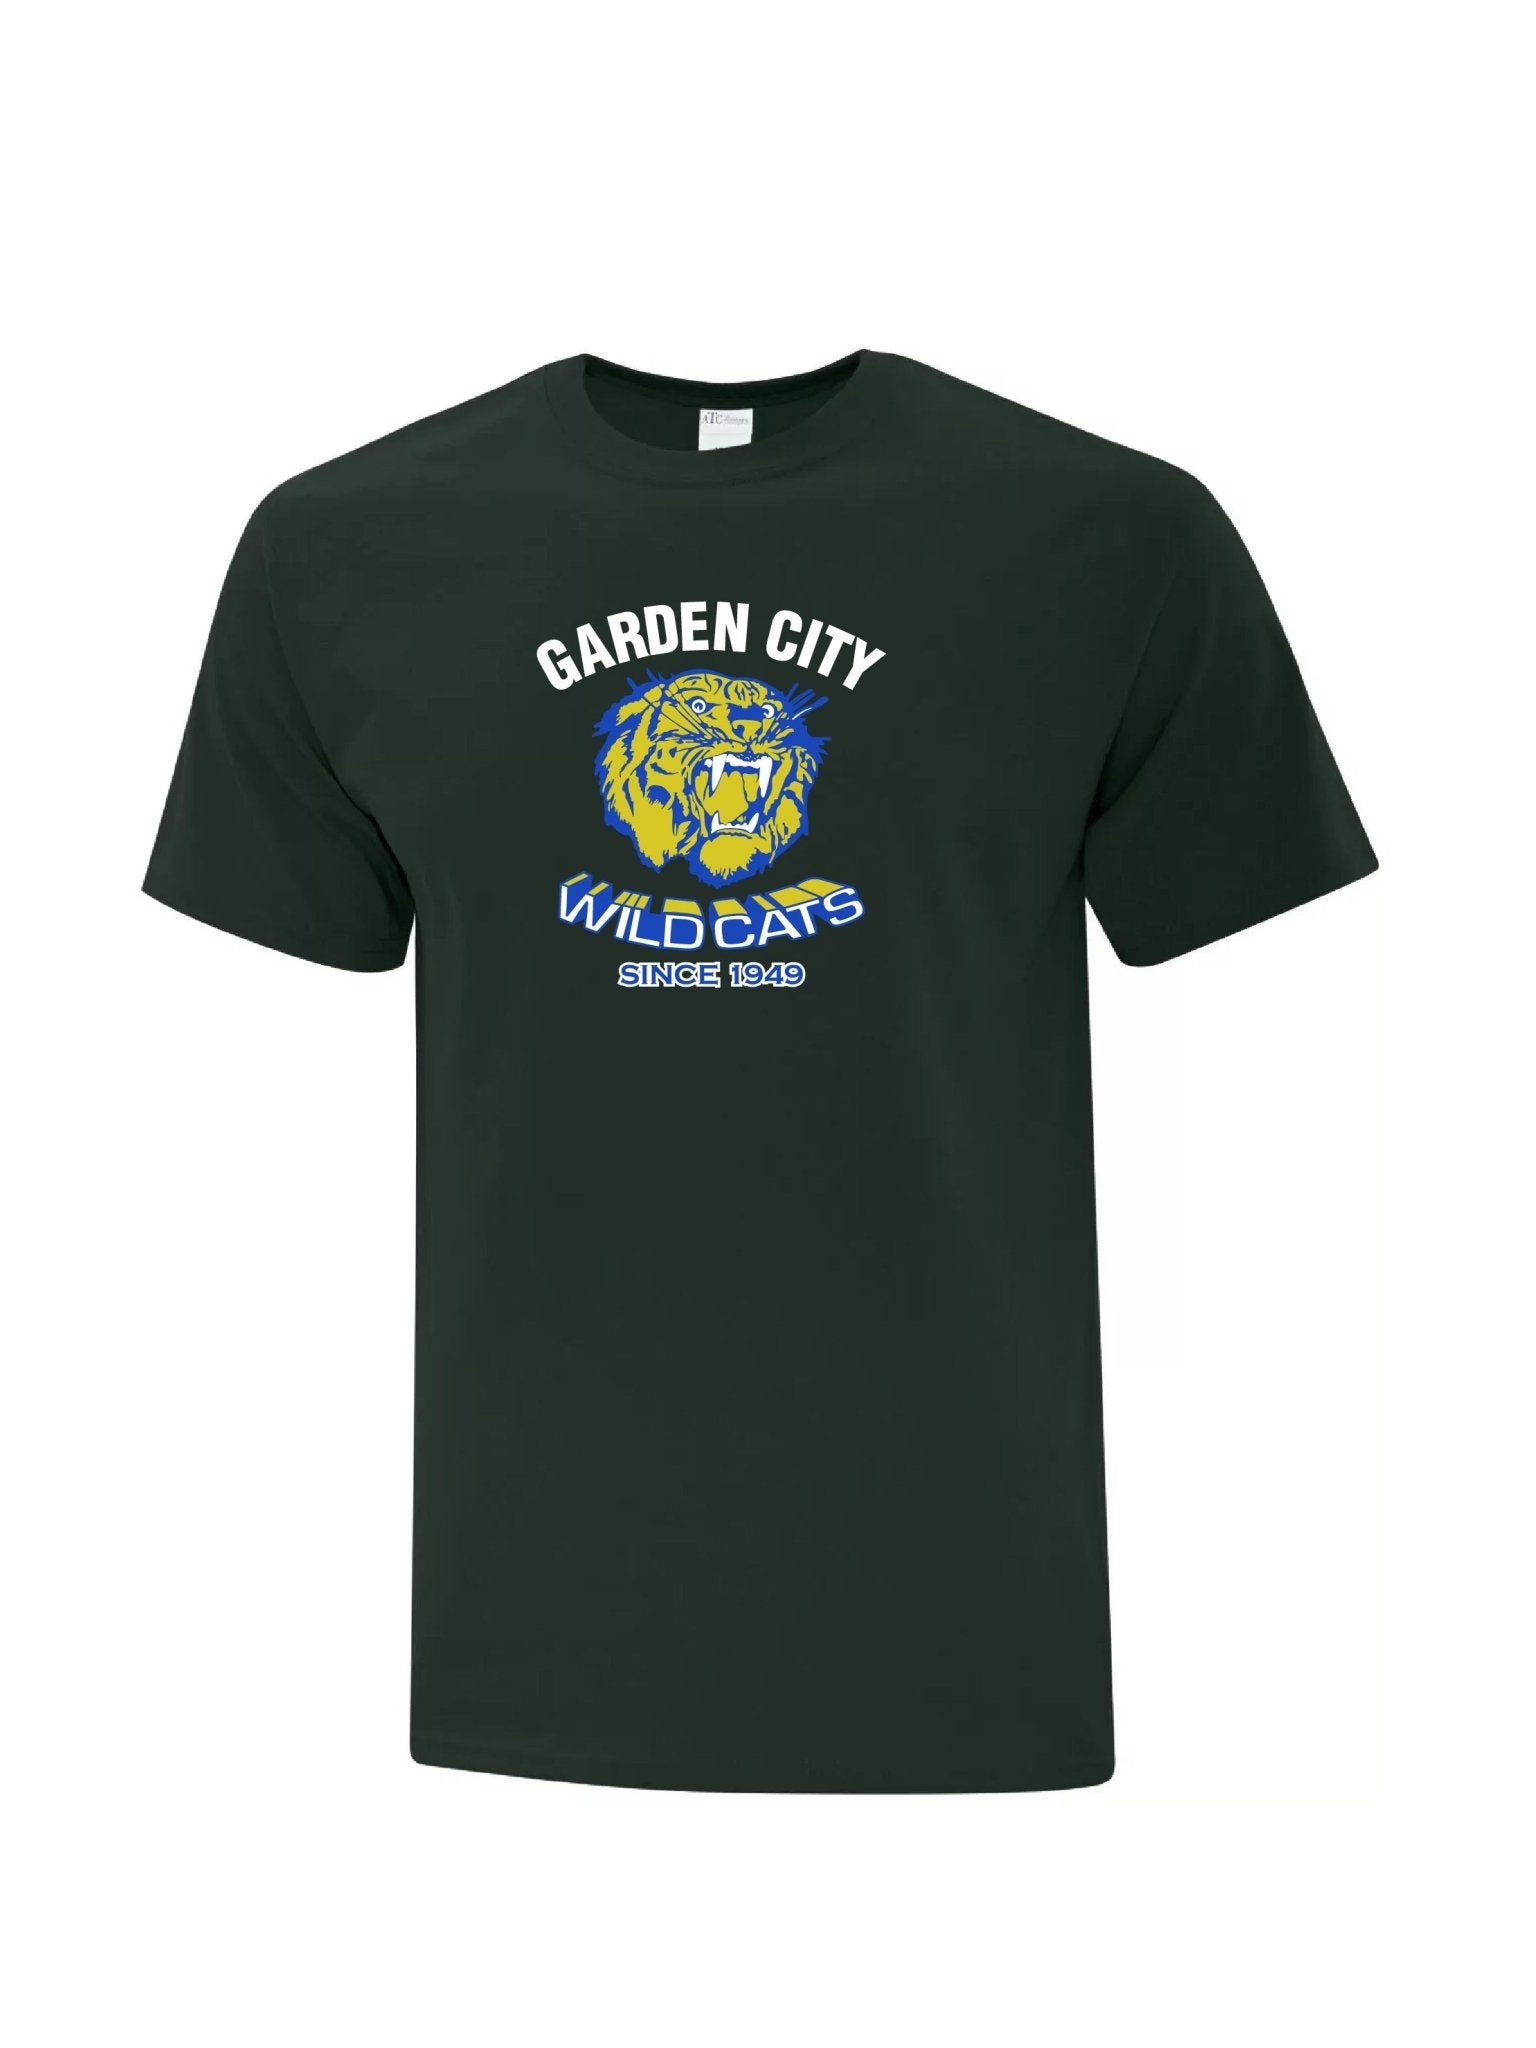 Youth Garden City Wildcats Since 1949 T-shirt - Oddball Workshop